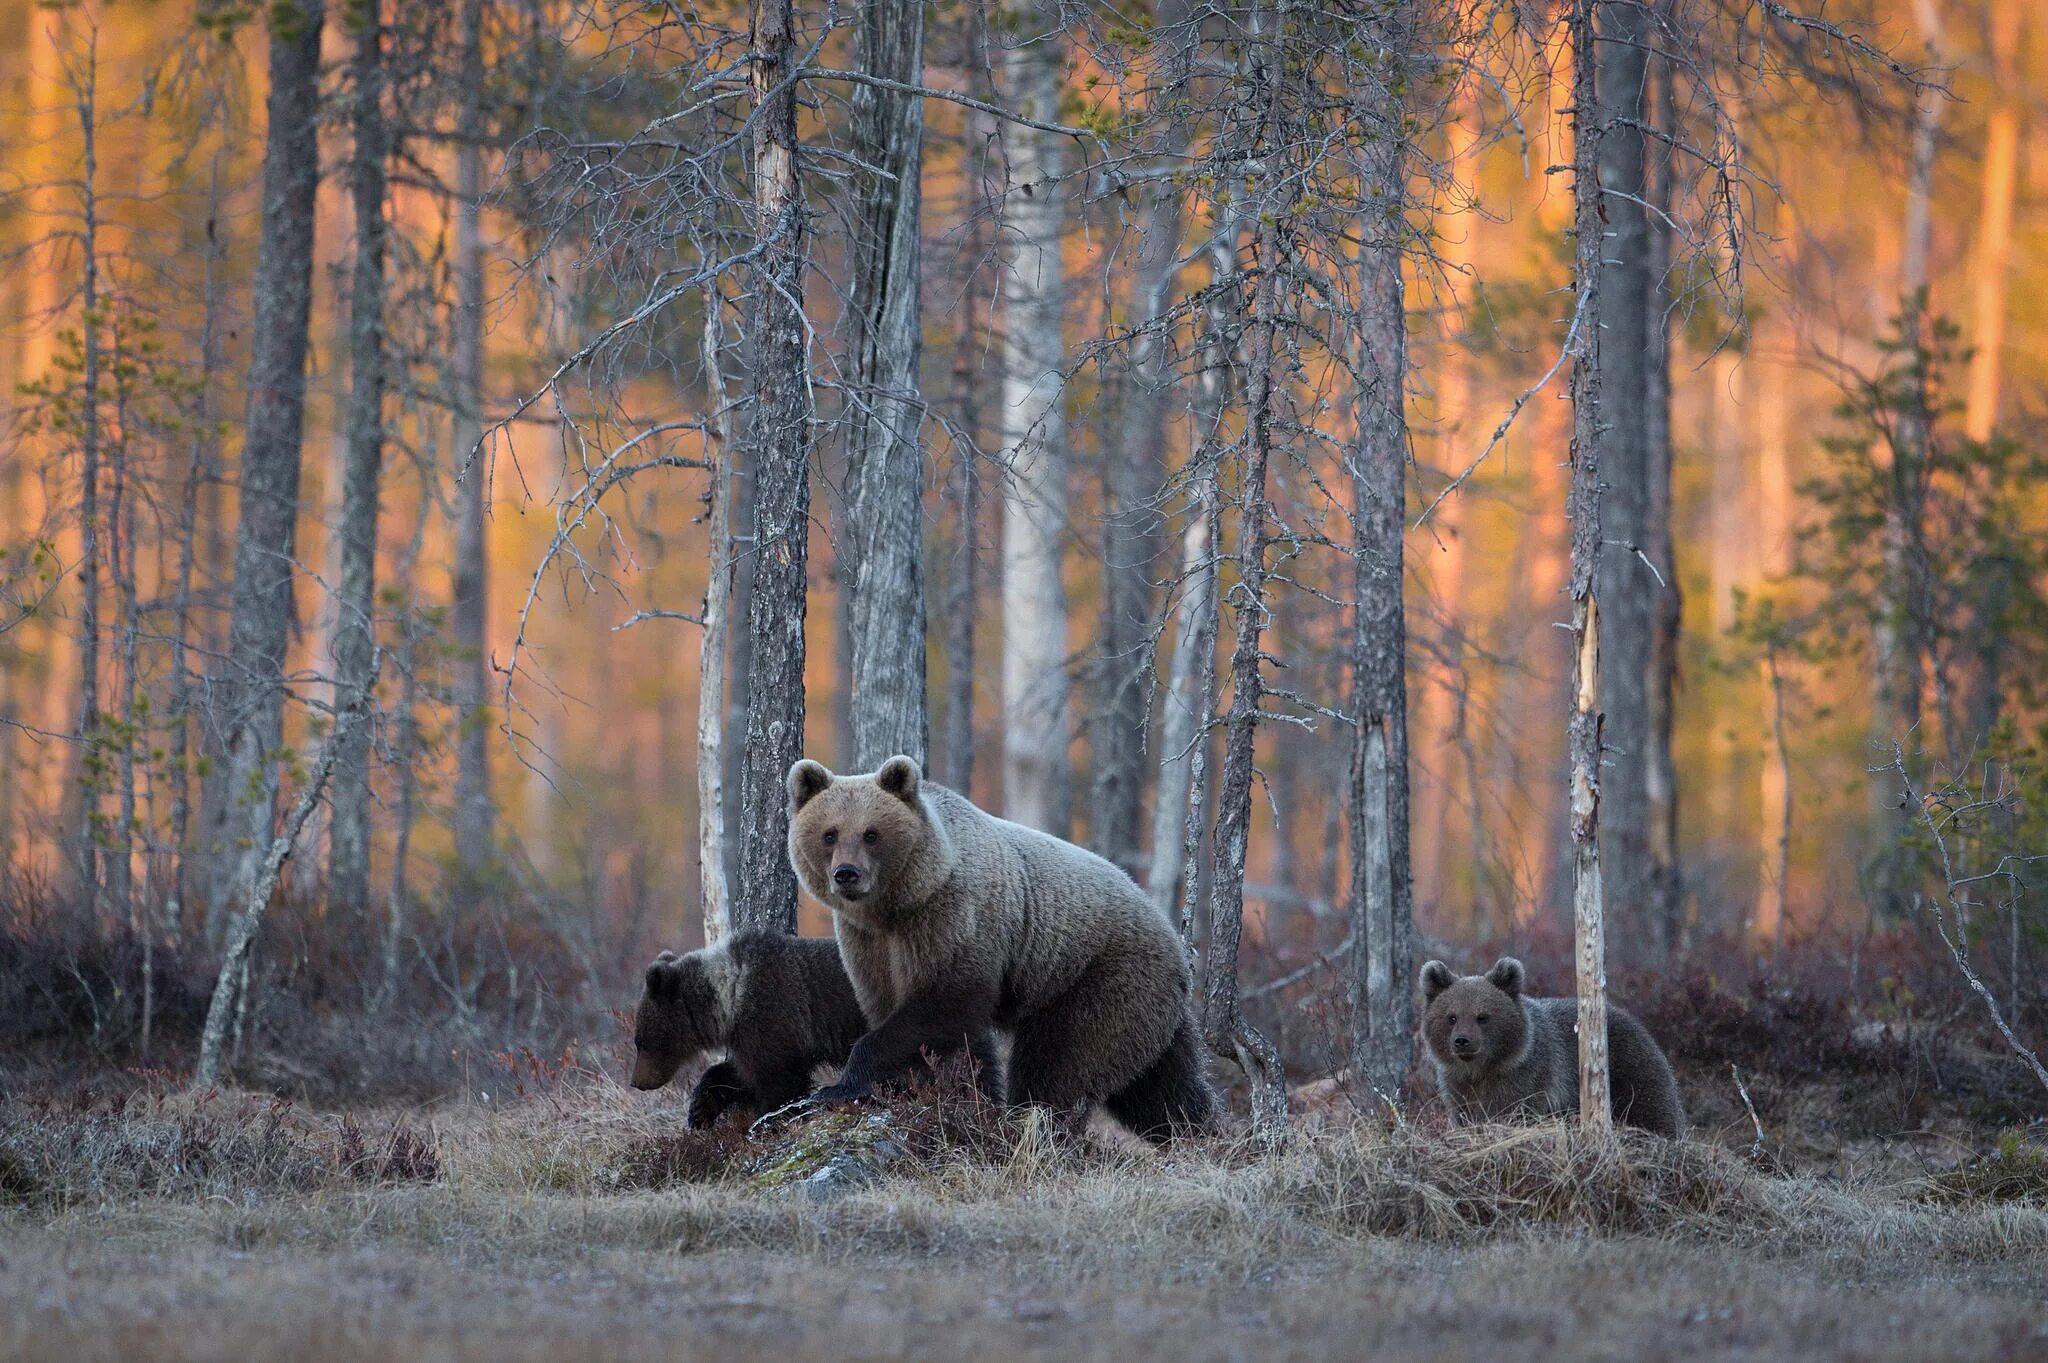 Бурый медведь Уссурийская Тайга. "Медведи в лесу" Kim Norlien. Бурый медведь в тайге. Сибирский, Таежный, Лесной, дикий. Wildlife на русском